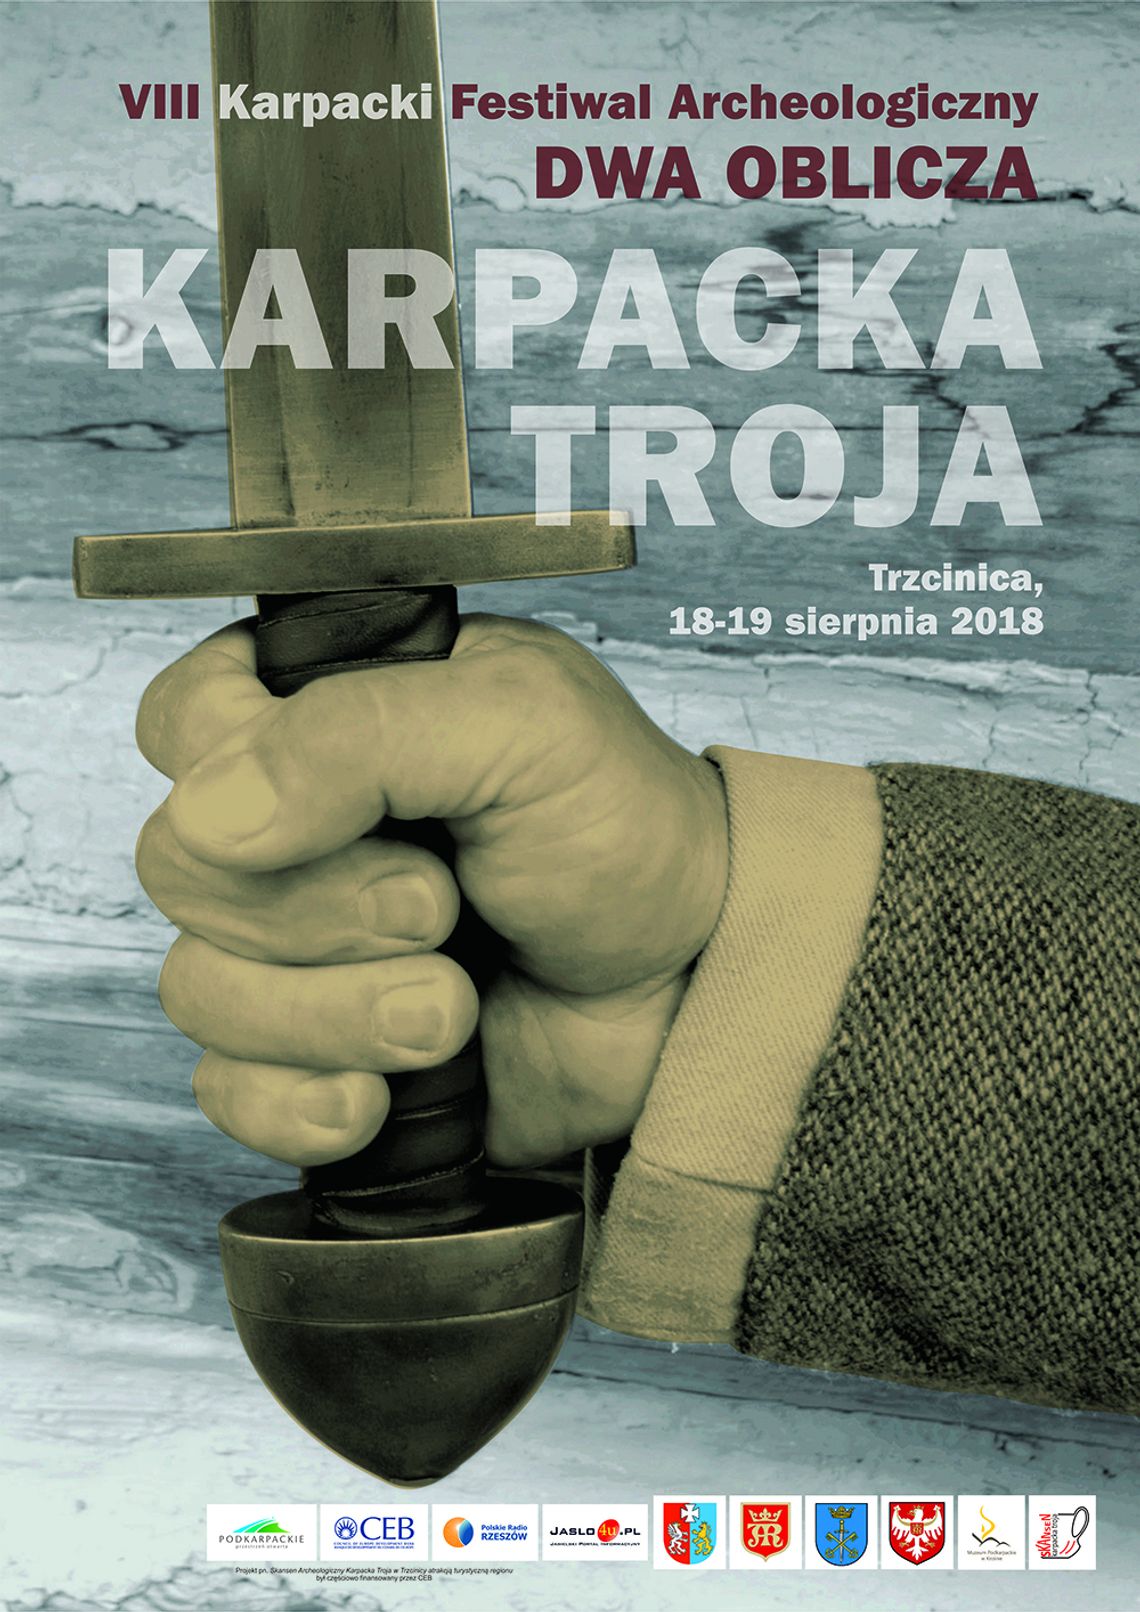 VIII Karpacki Festiwal Archeologiczny Dwa Oblicza w Karpackiej Troi